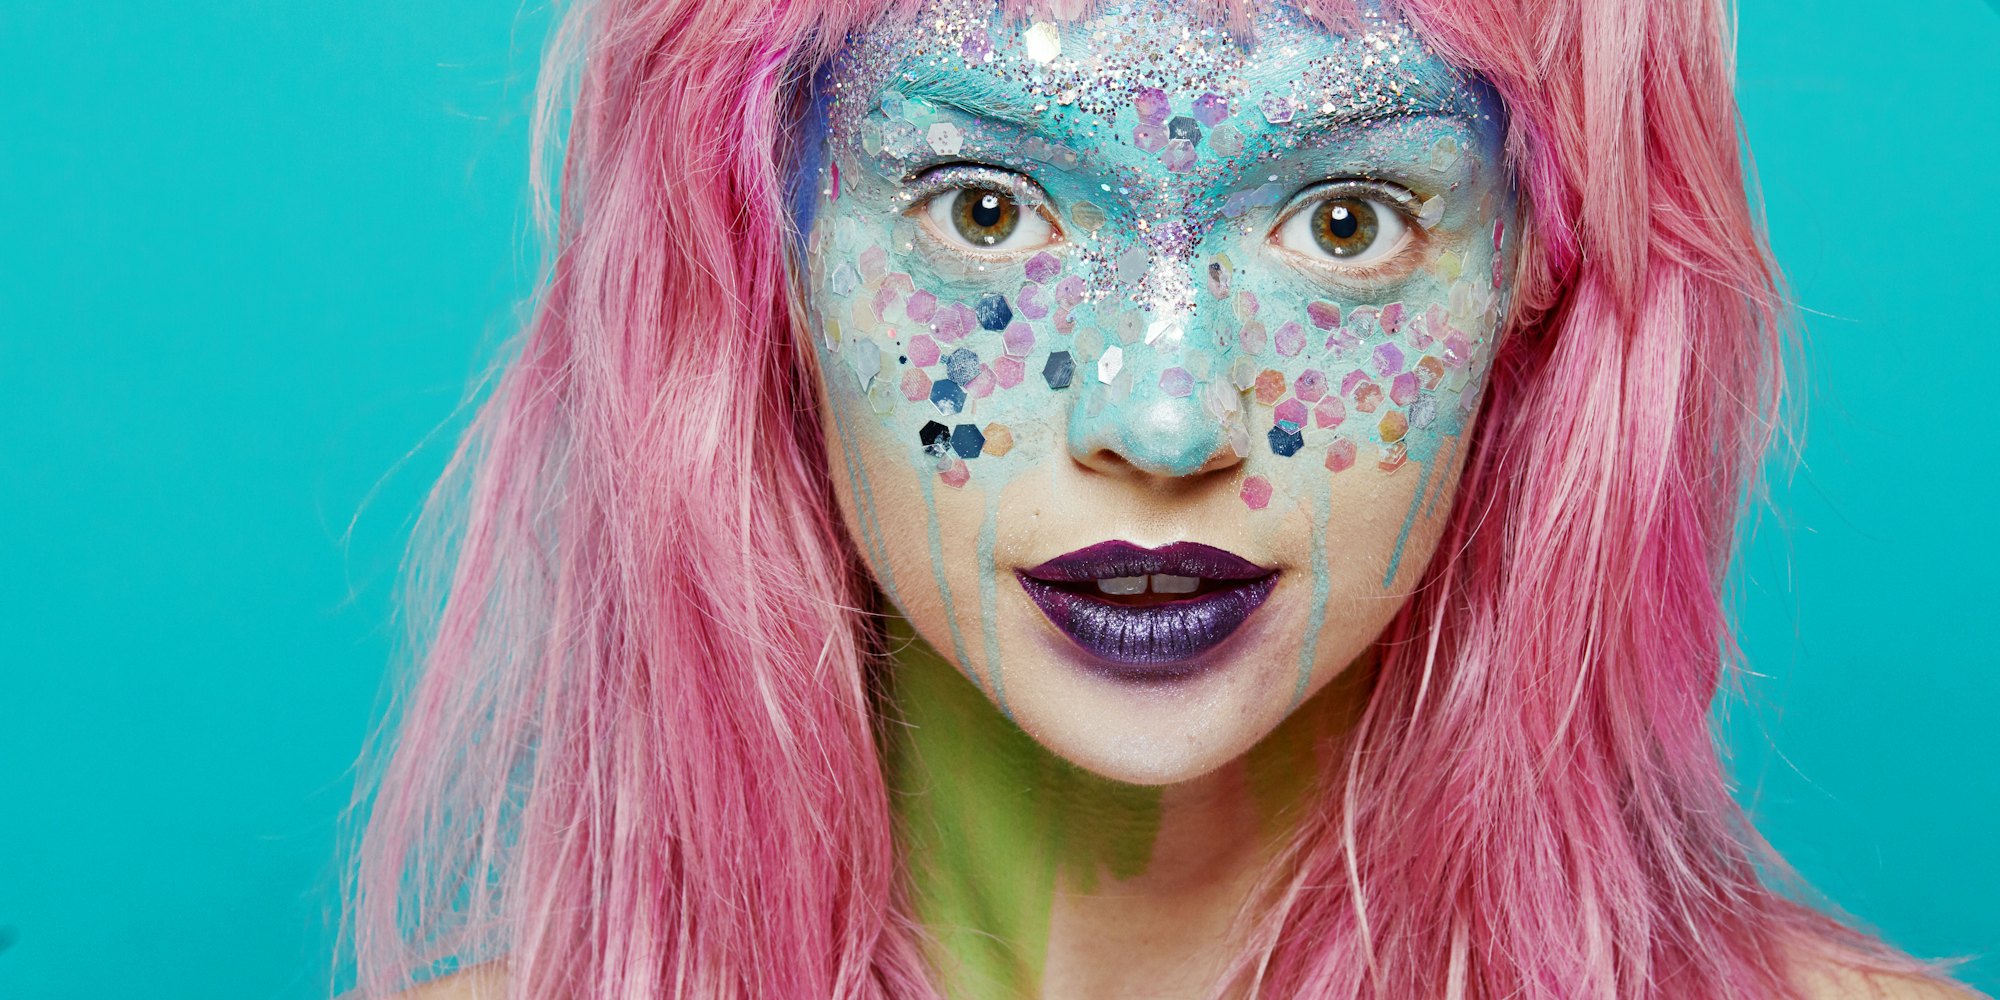 Halloween Series: Mermaid Inspired Makeup Look - Pretty In Pigment